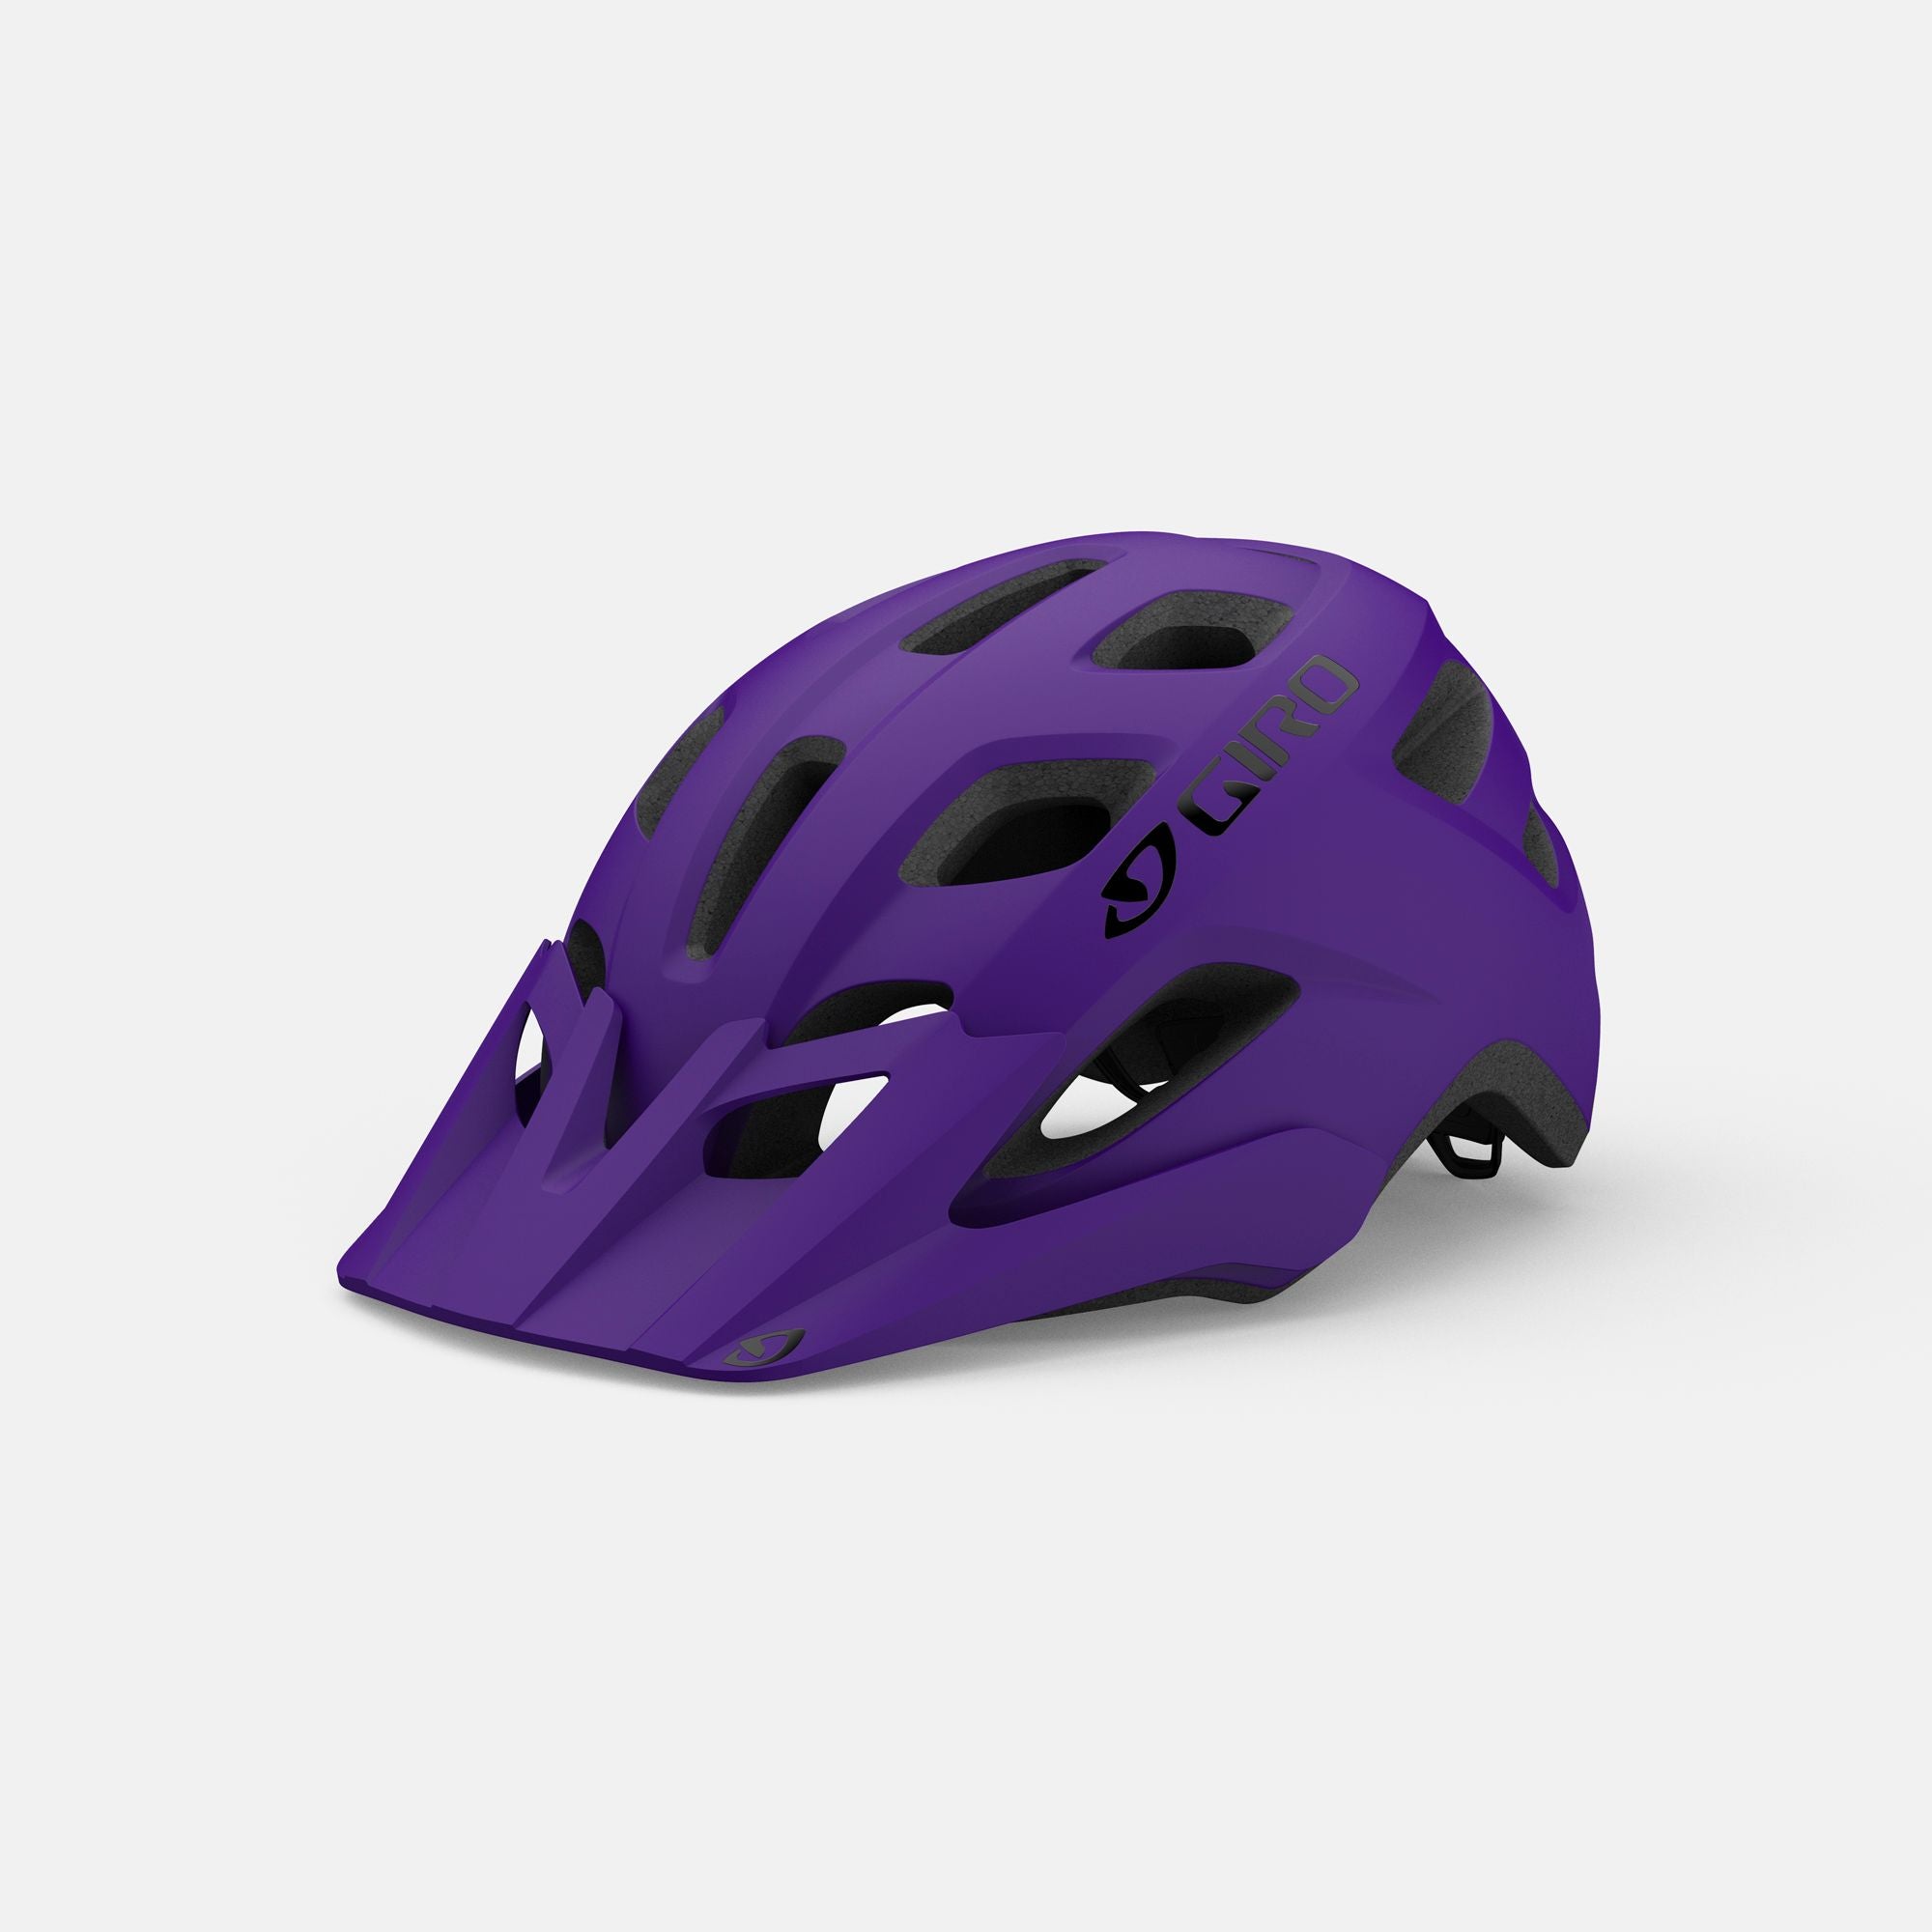 Helmets – Rock N' Road